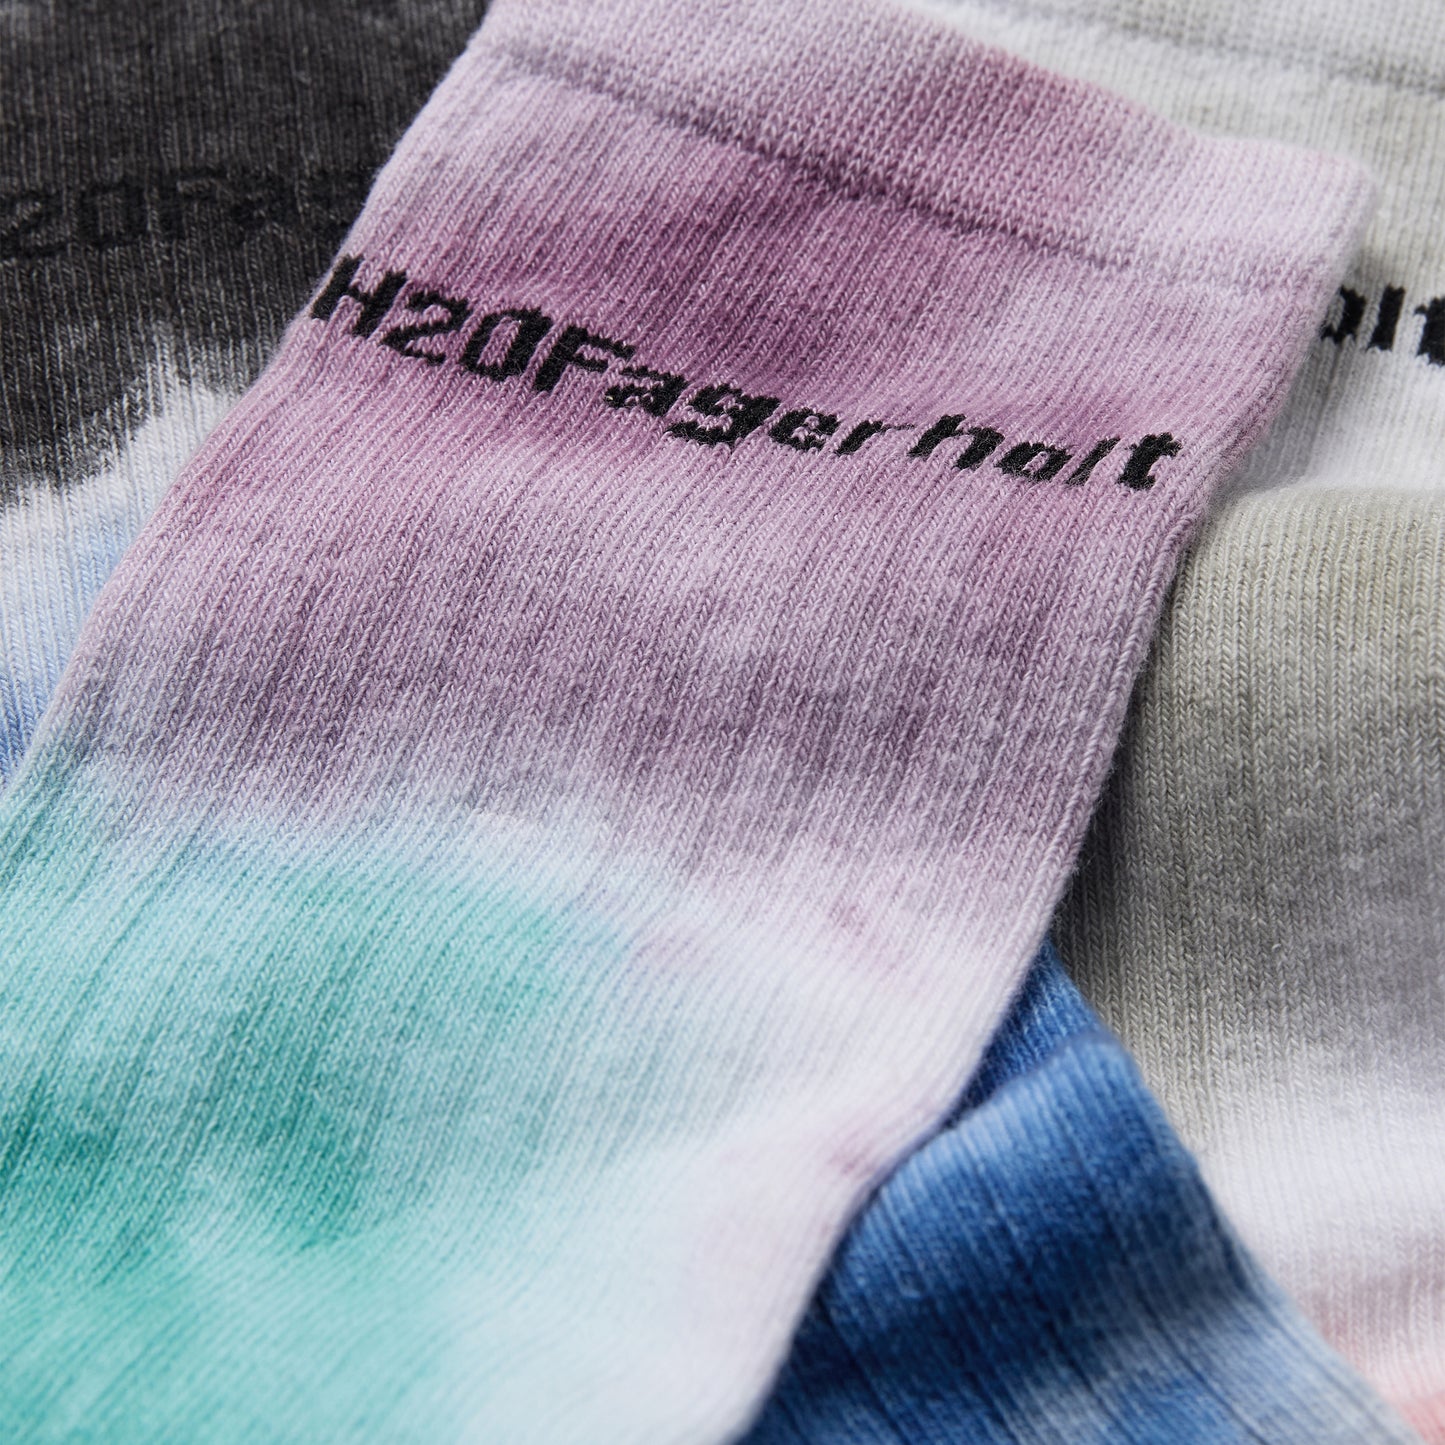 H2OFagerholt Dip Dye Sock Socks 7891 Black/White/Creamy Grey